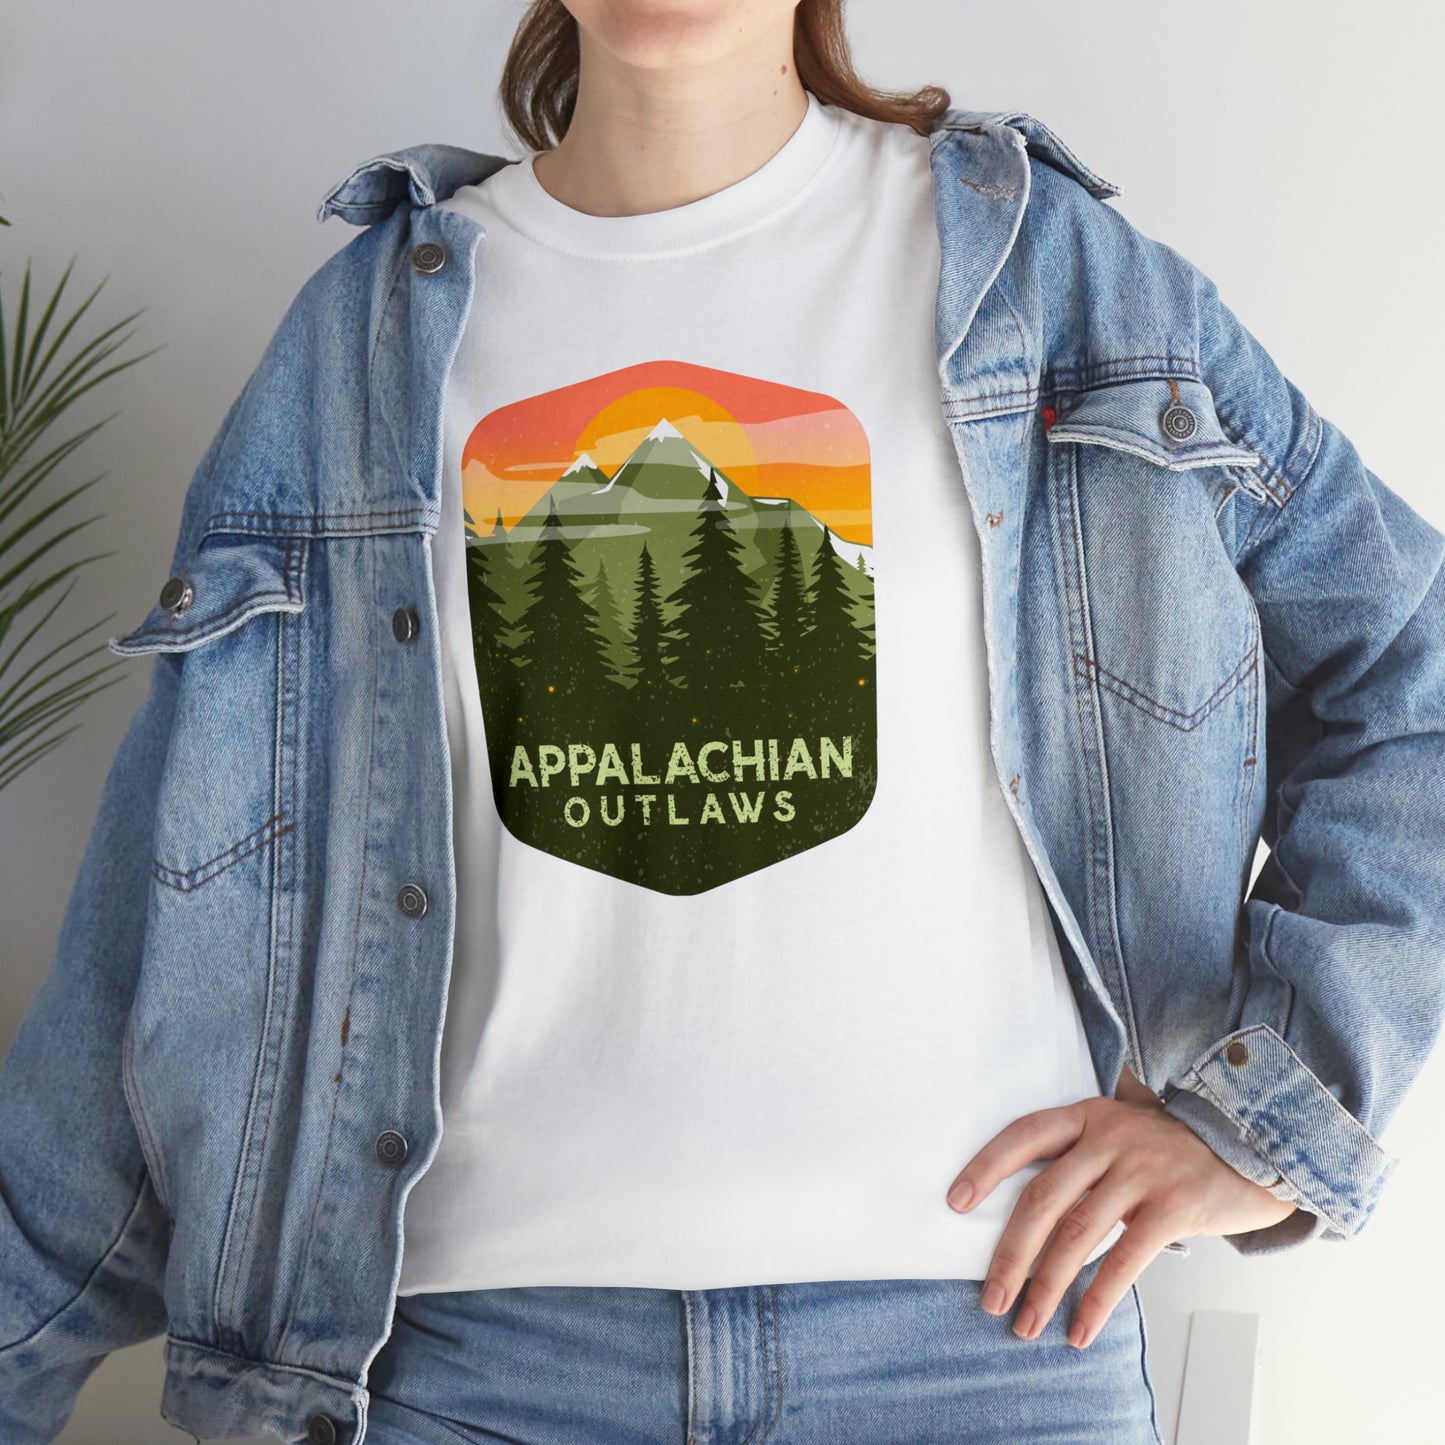 Appalachian Outlaws Outdoors Mountain T-Shirt